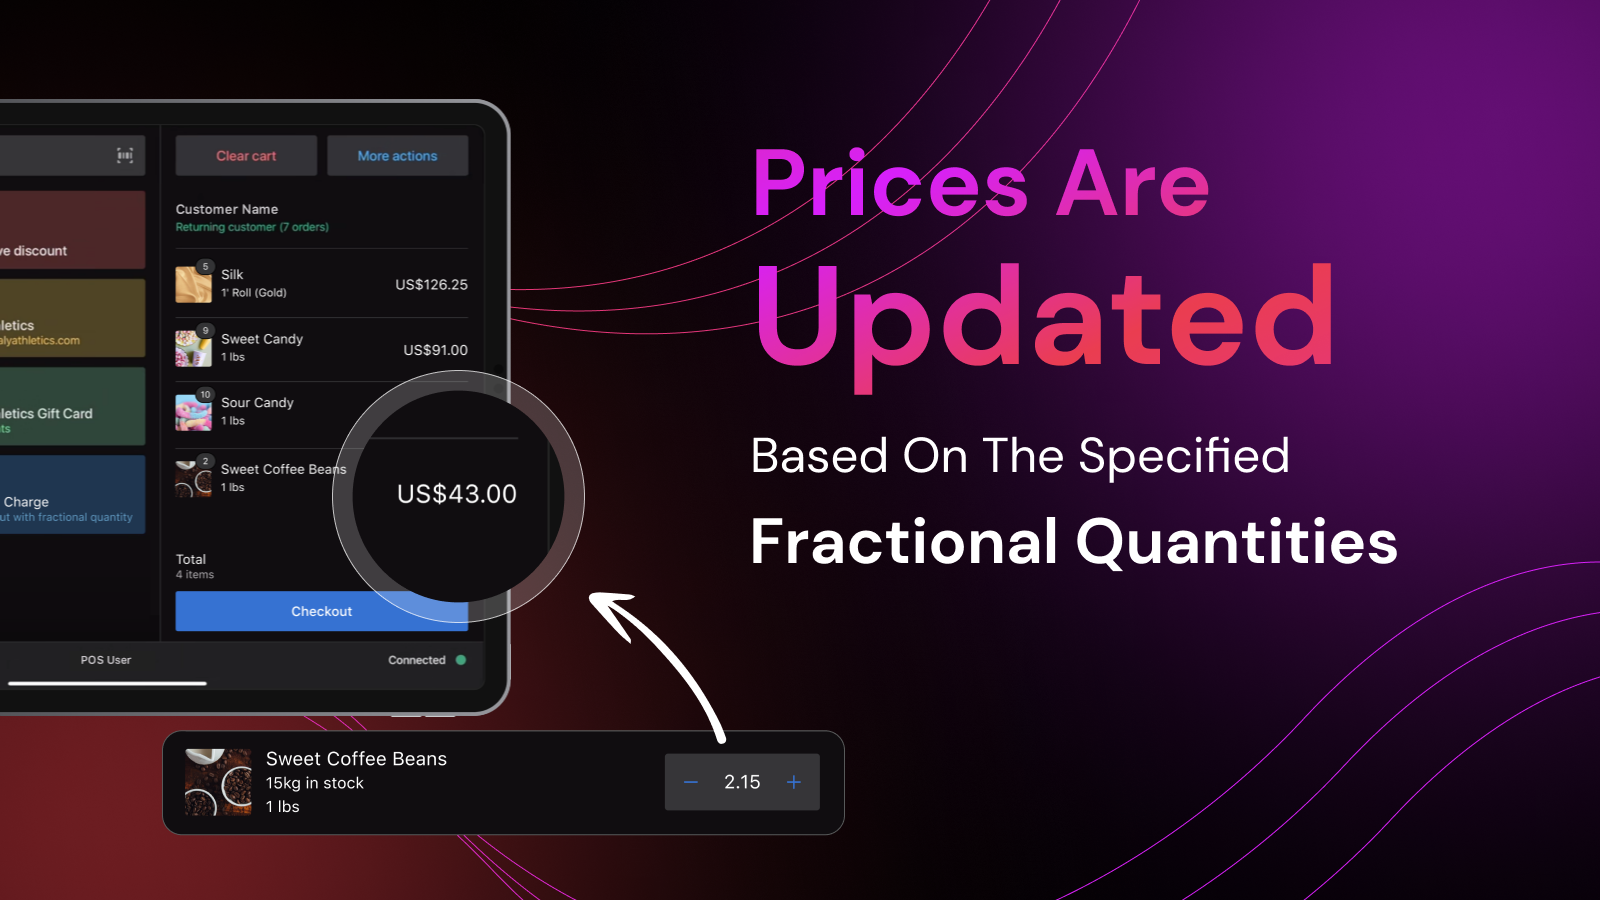 Los precios se actualizan en función de las cantidades fraccionales especificadas